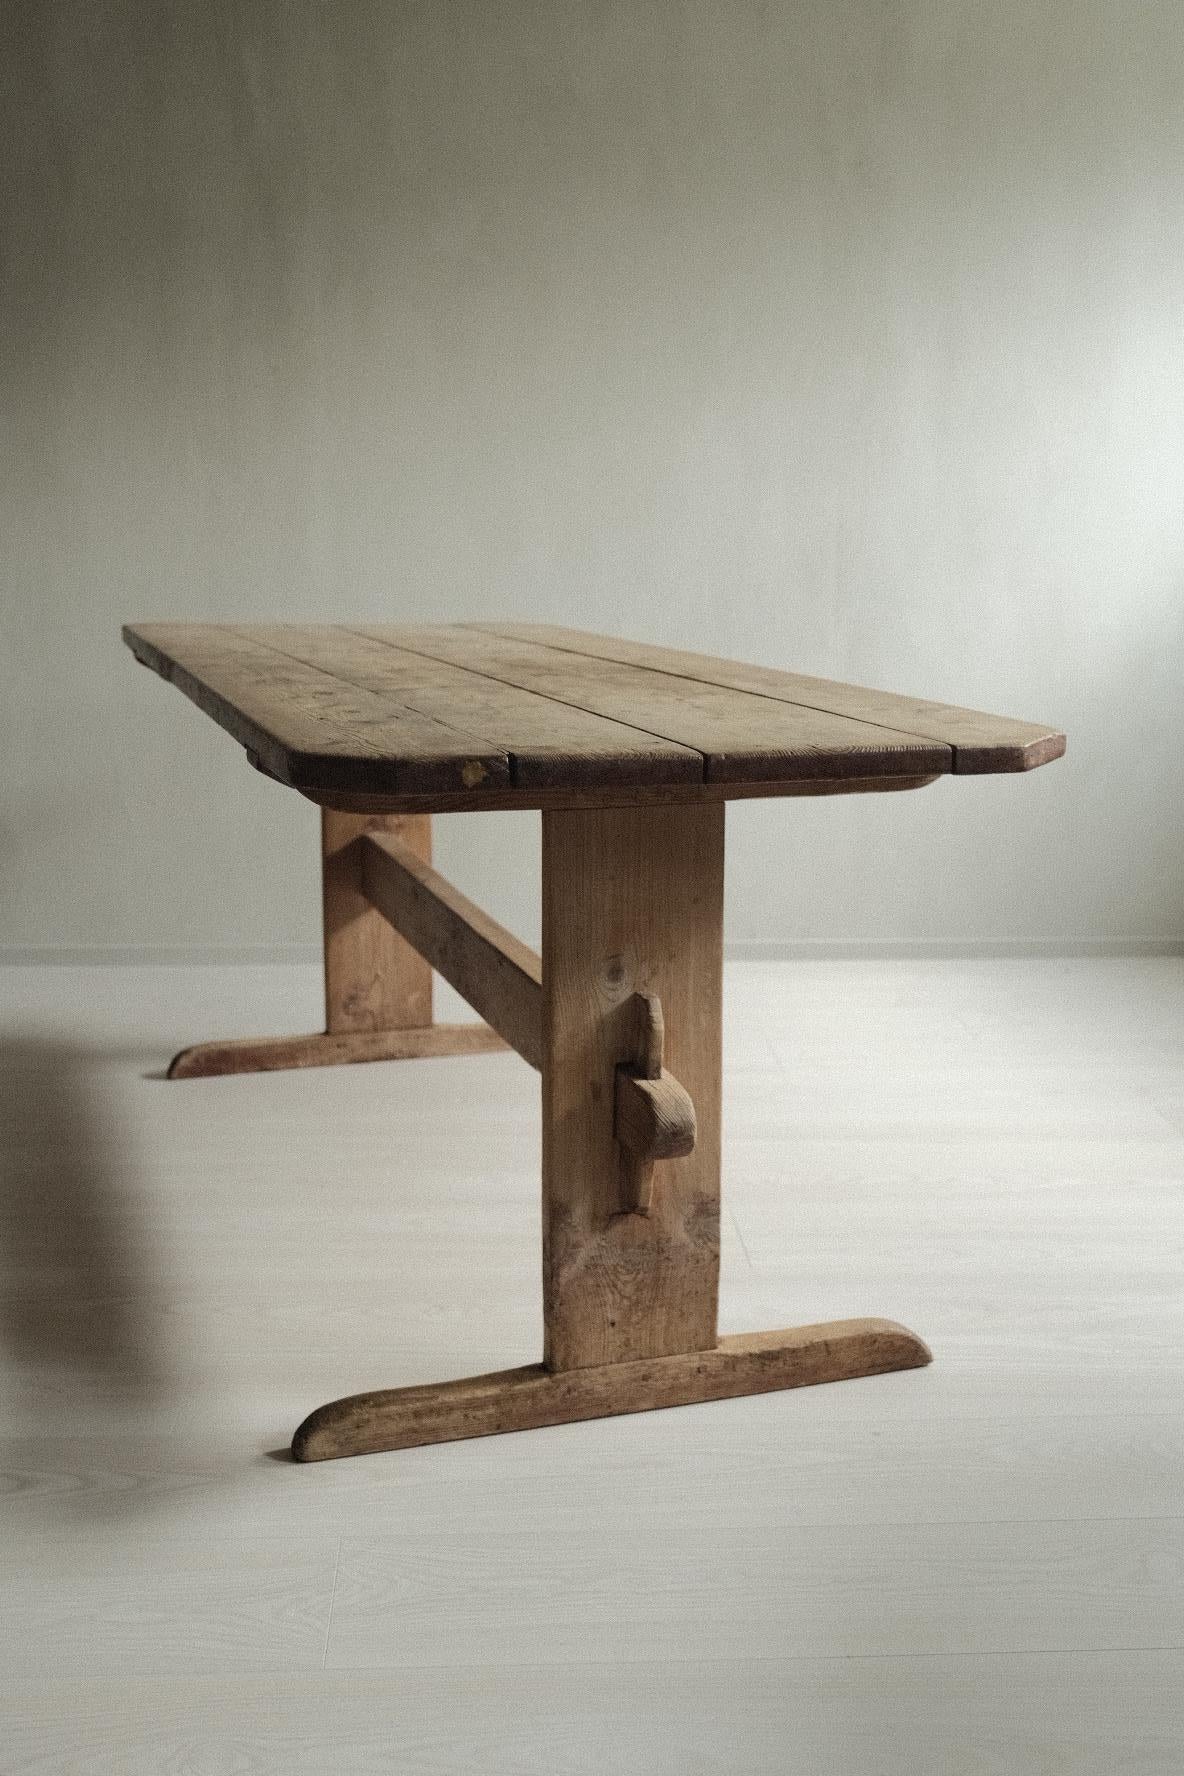 Ein wunderschöner, handgefertigter Tisch aus Kiefernholz, der durch Alter und Gebrauch eine schöne Patina aufweist. Original aus Schweden, um 1800. 

Kann sowohl als Esstisch als auch als Konsolentisch verwendet werden.
 